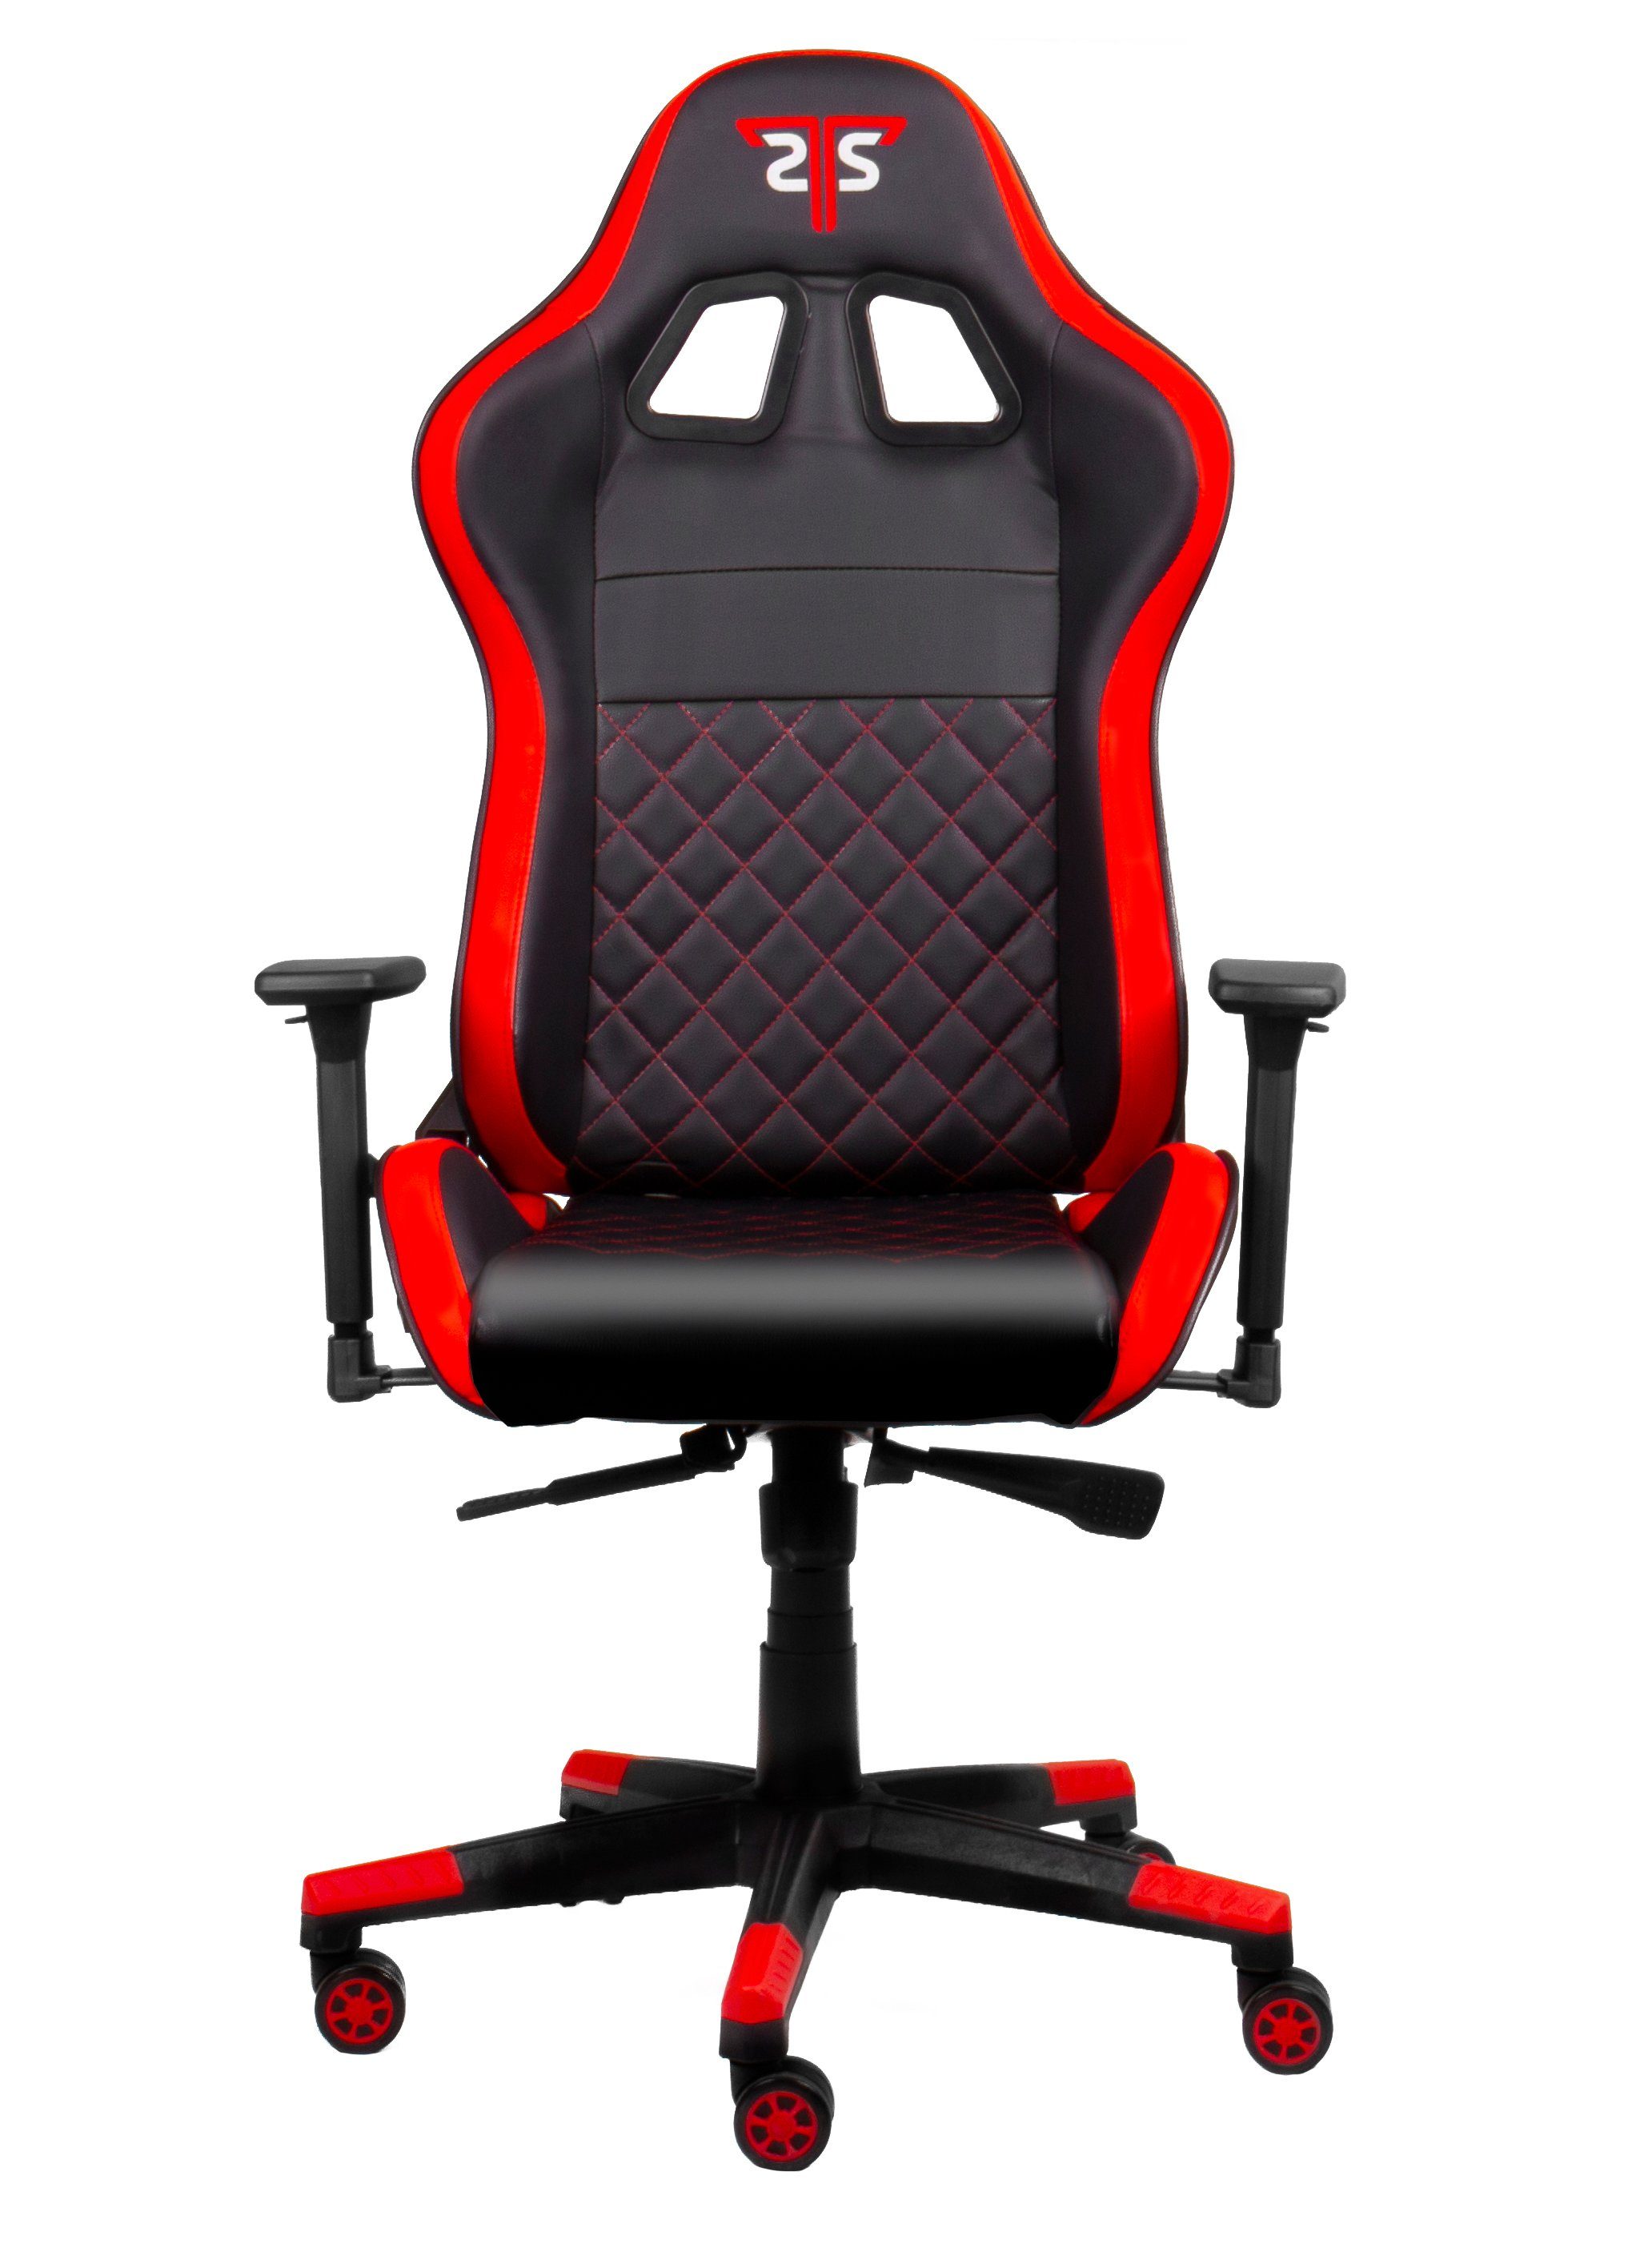 Hyrican Code Gamingstuhl,Schreibtischstuhl Red XL" ergonomischer "Striker Gaming-Stuhl